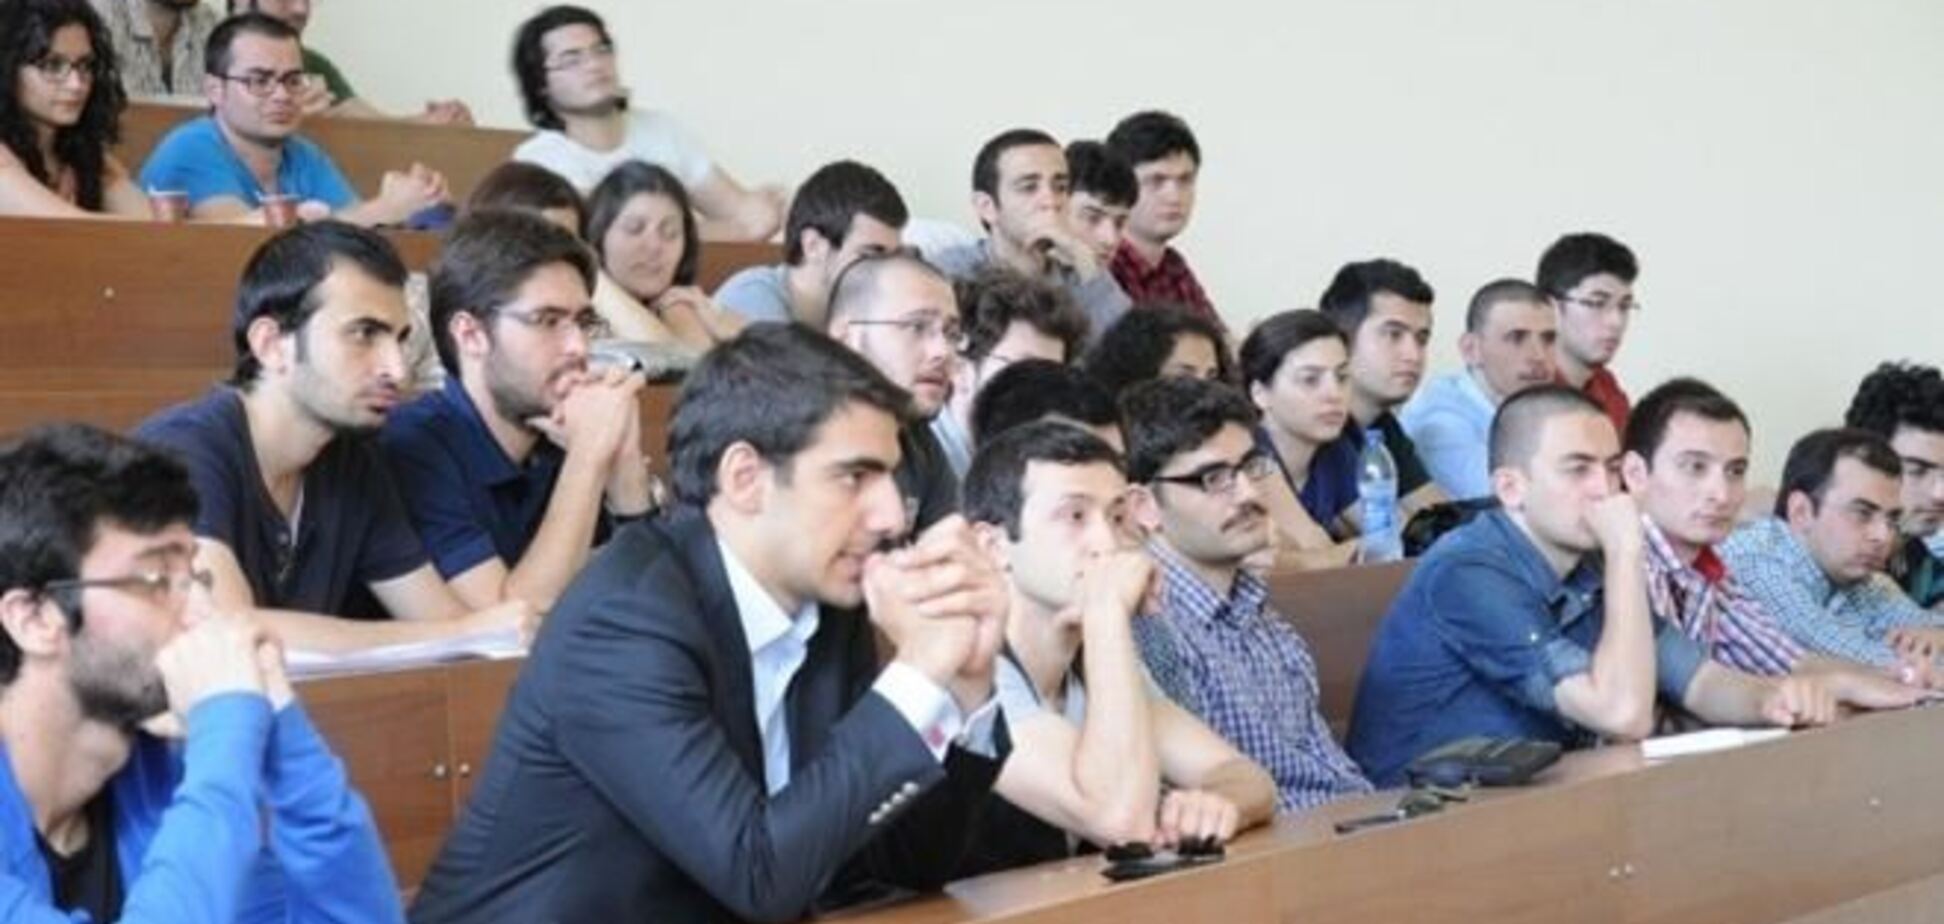 В Турции студенческие общежития разделят на мужские и женские